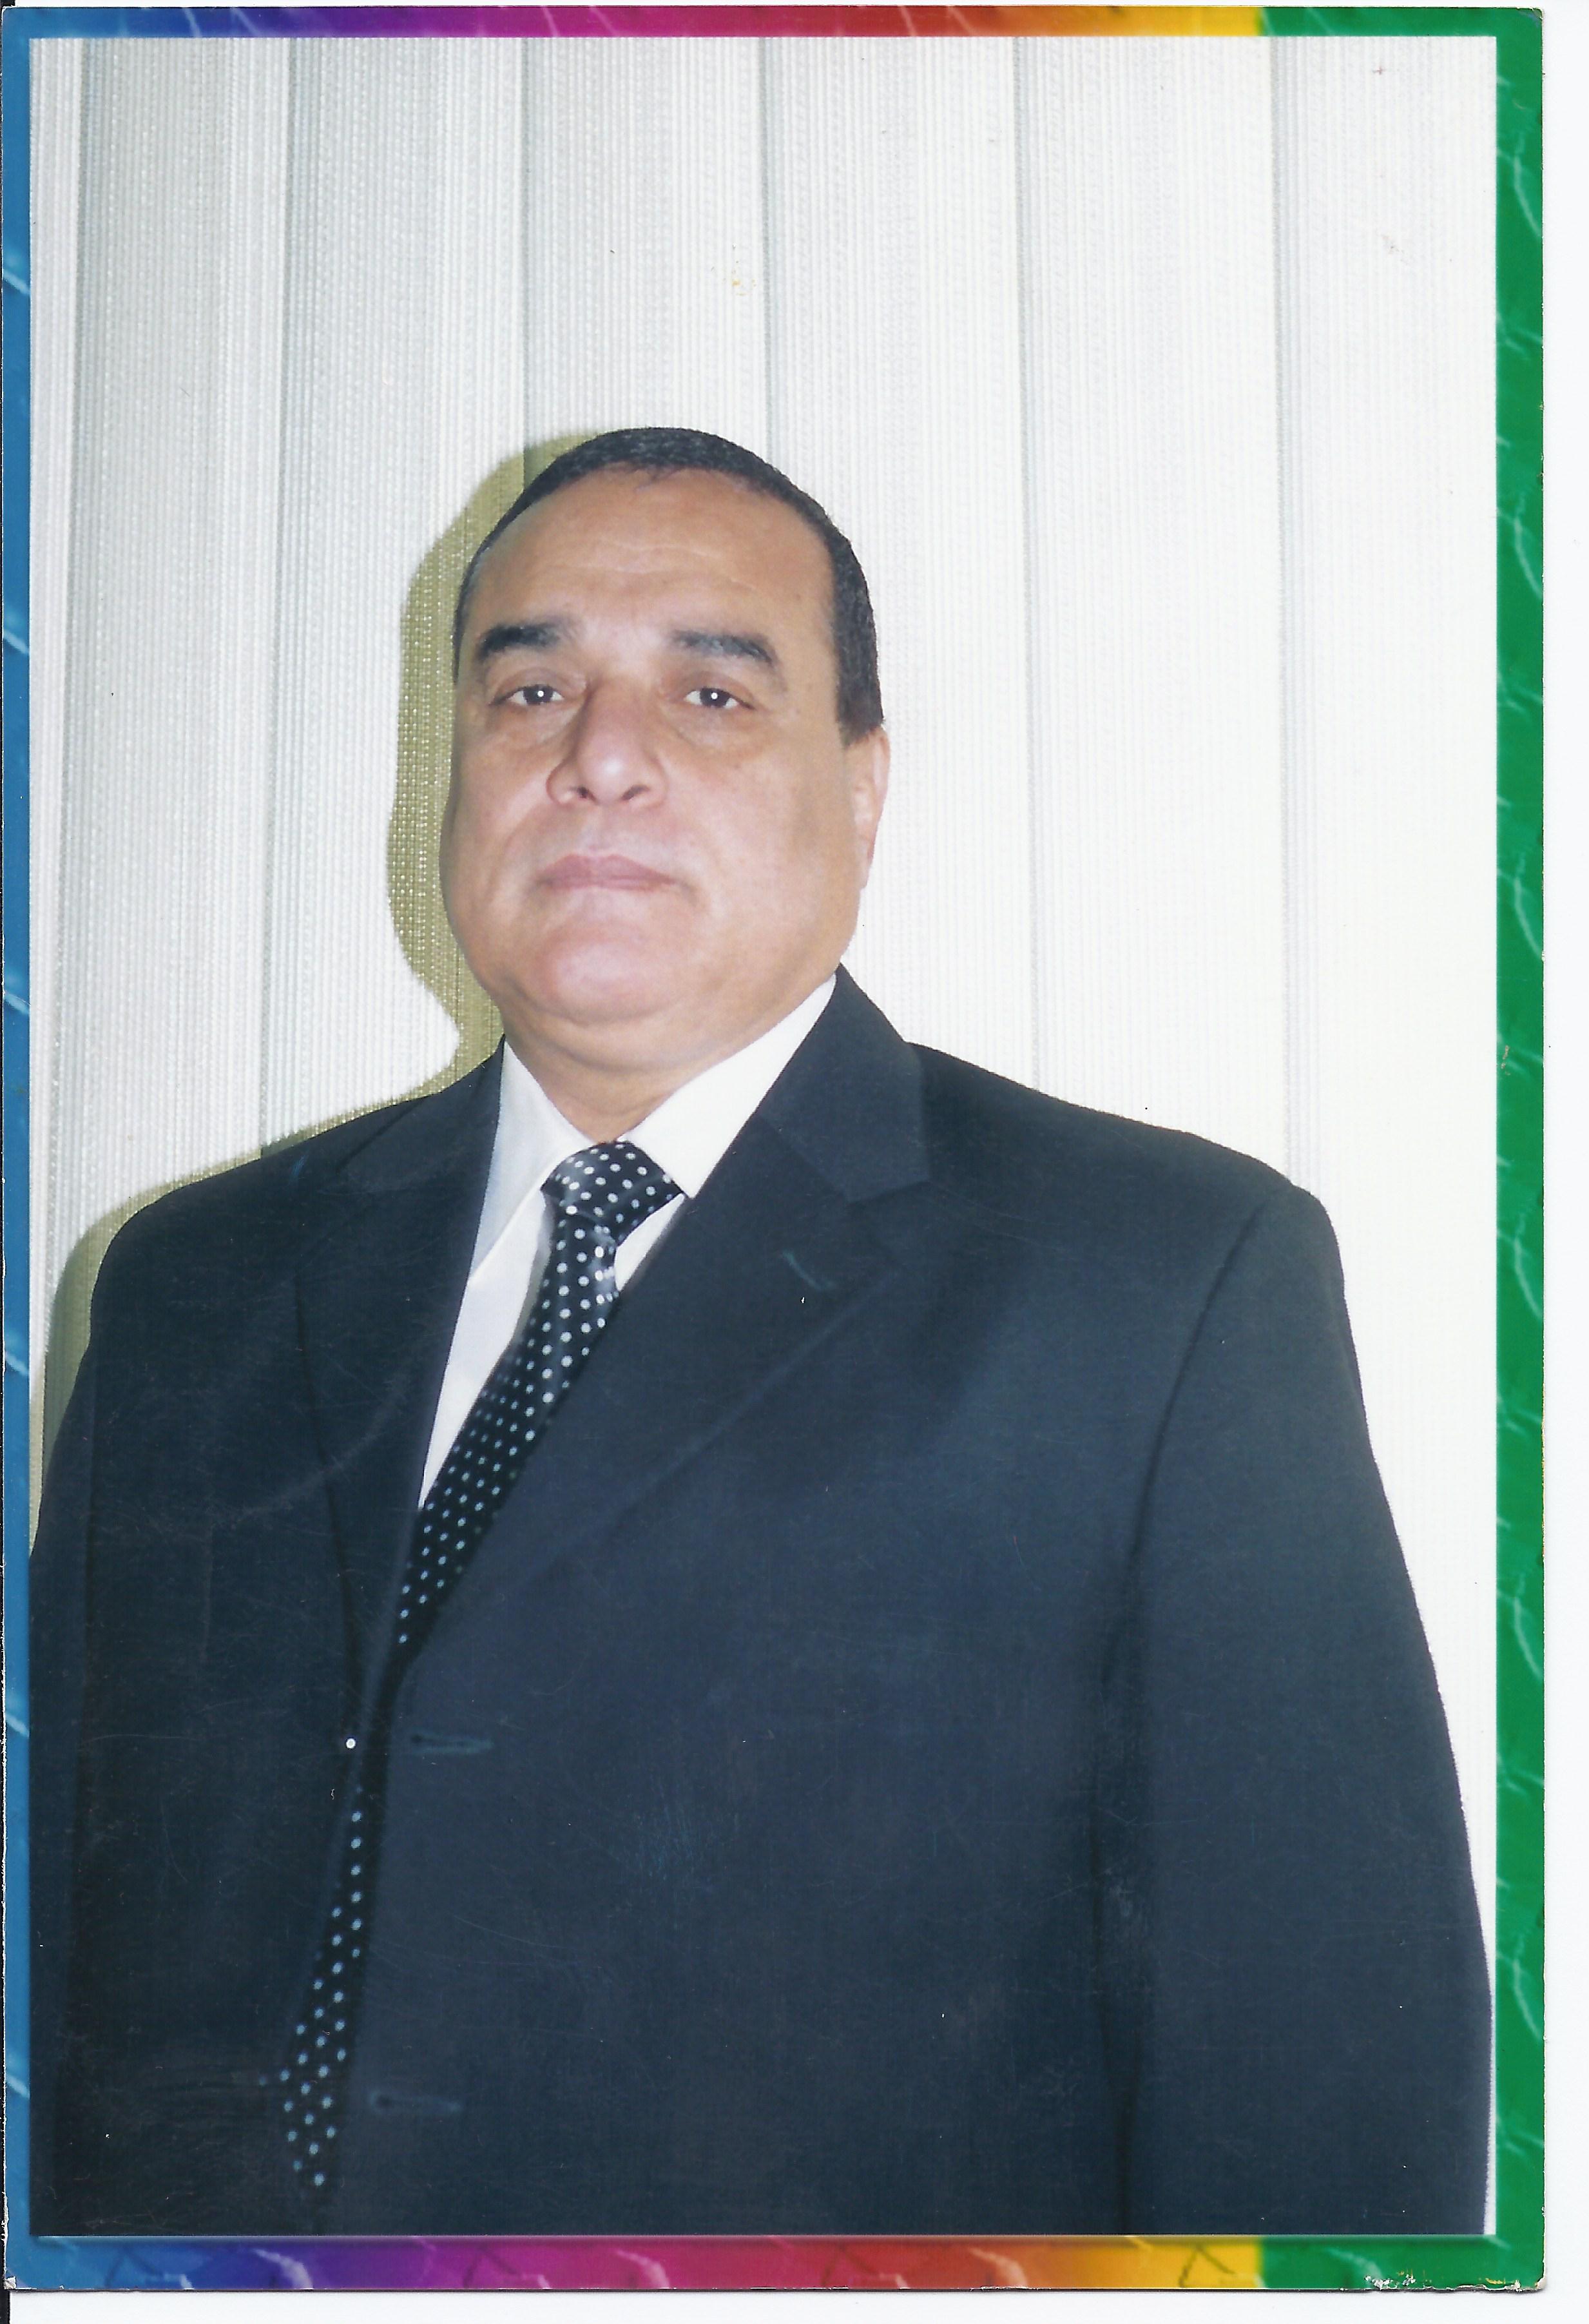 Mohammed Fouad Mohammed Abdallah